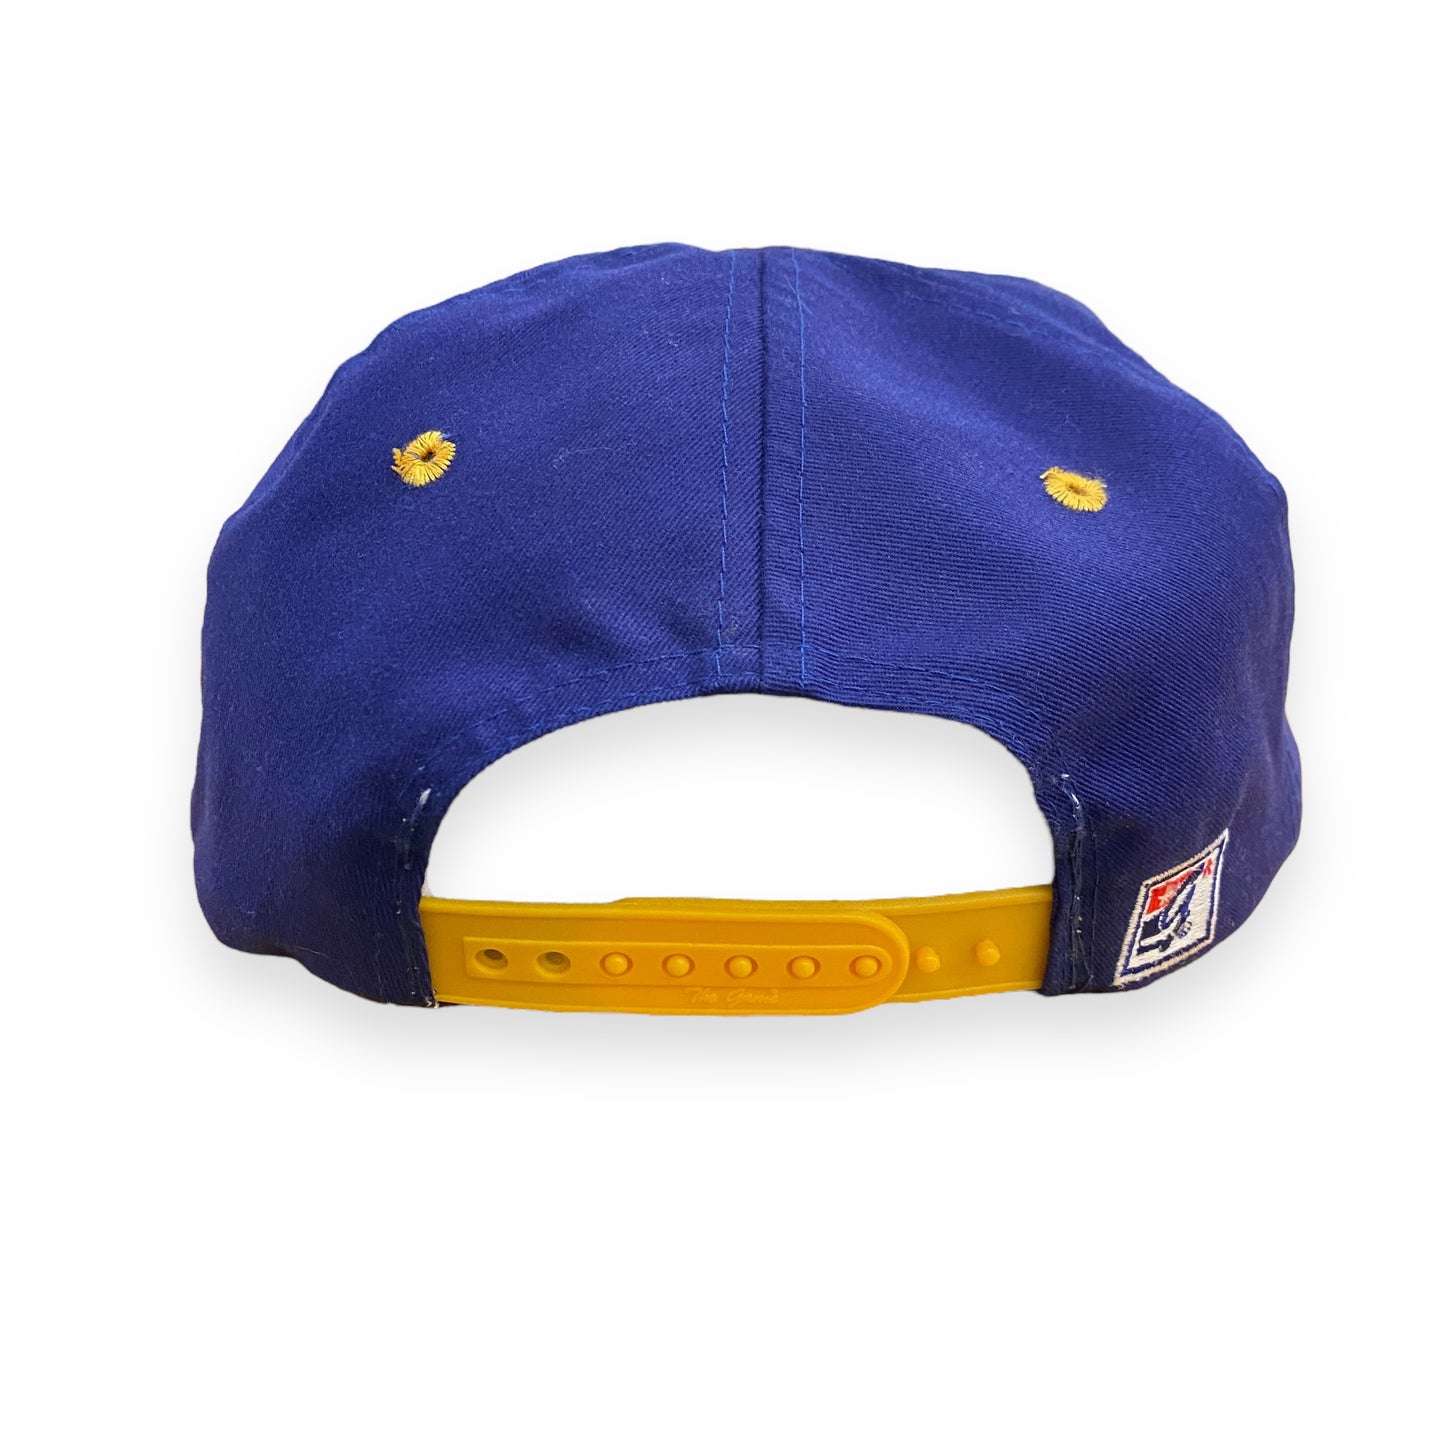 Vintage The Game 1990s Minnesota Vikings Football Snapback Hat